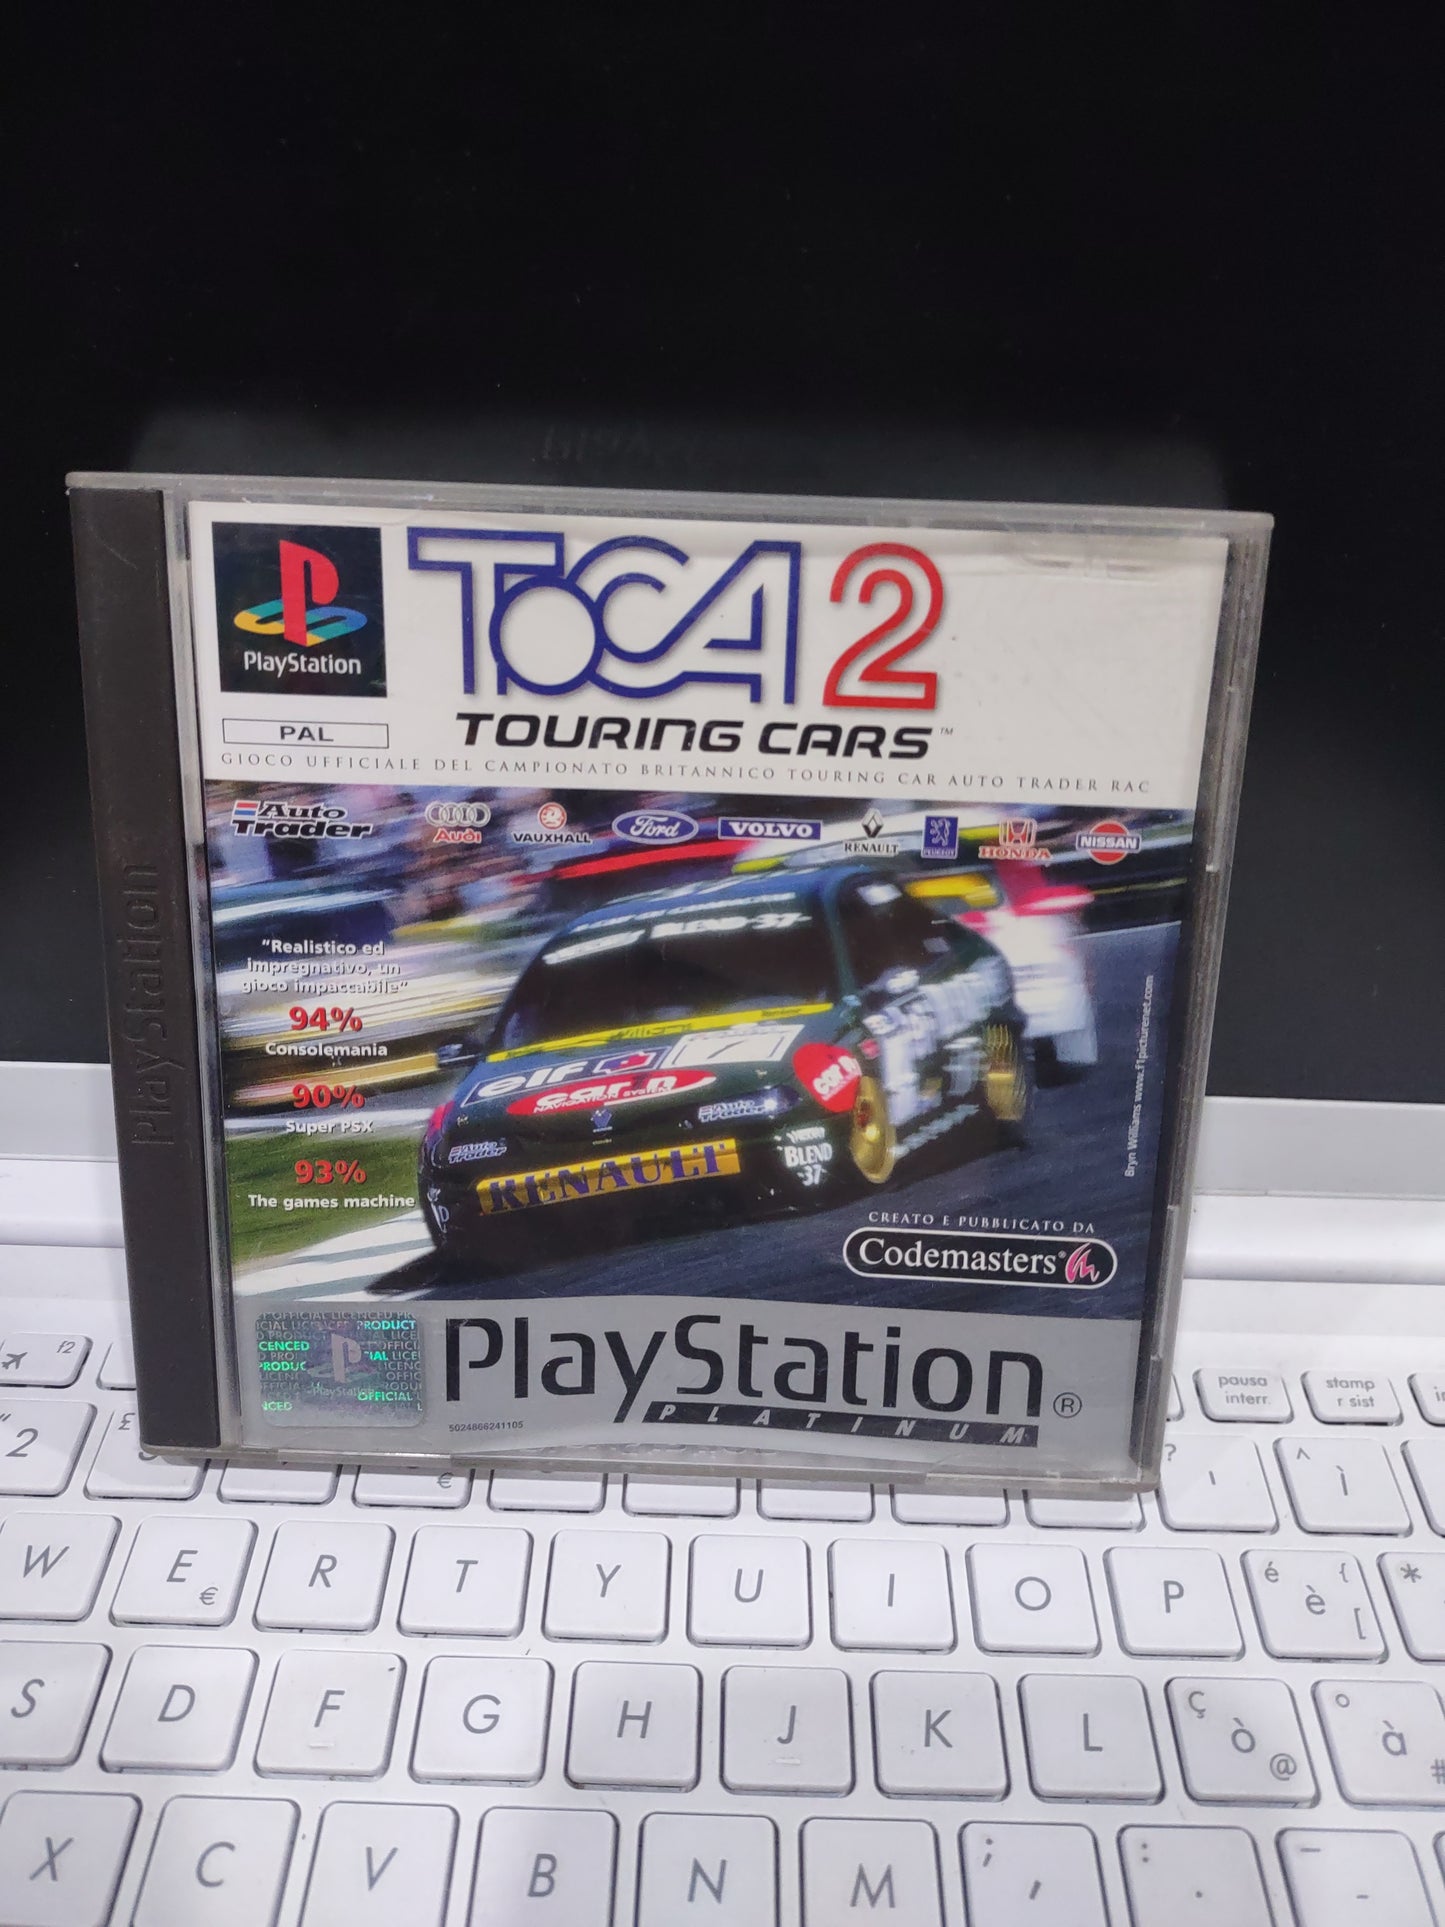 Gioco PS1 Platinum toca touring Cars 2